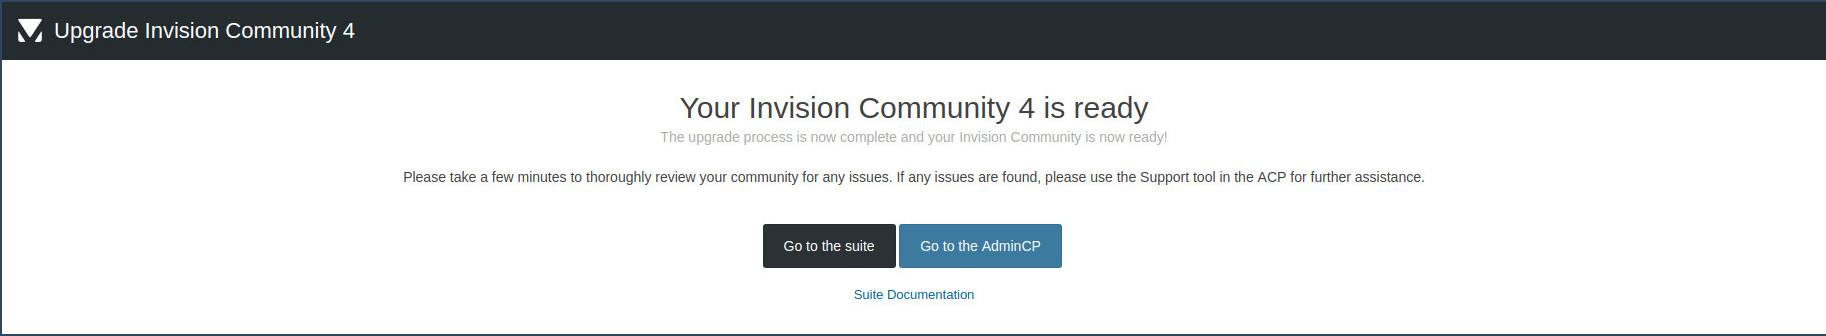 Invision Community script upgrade